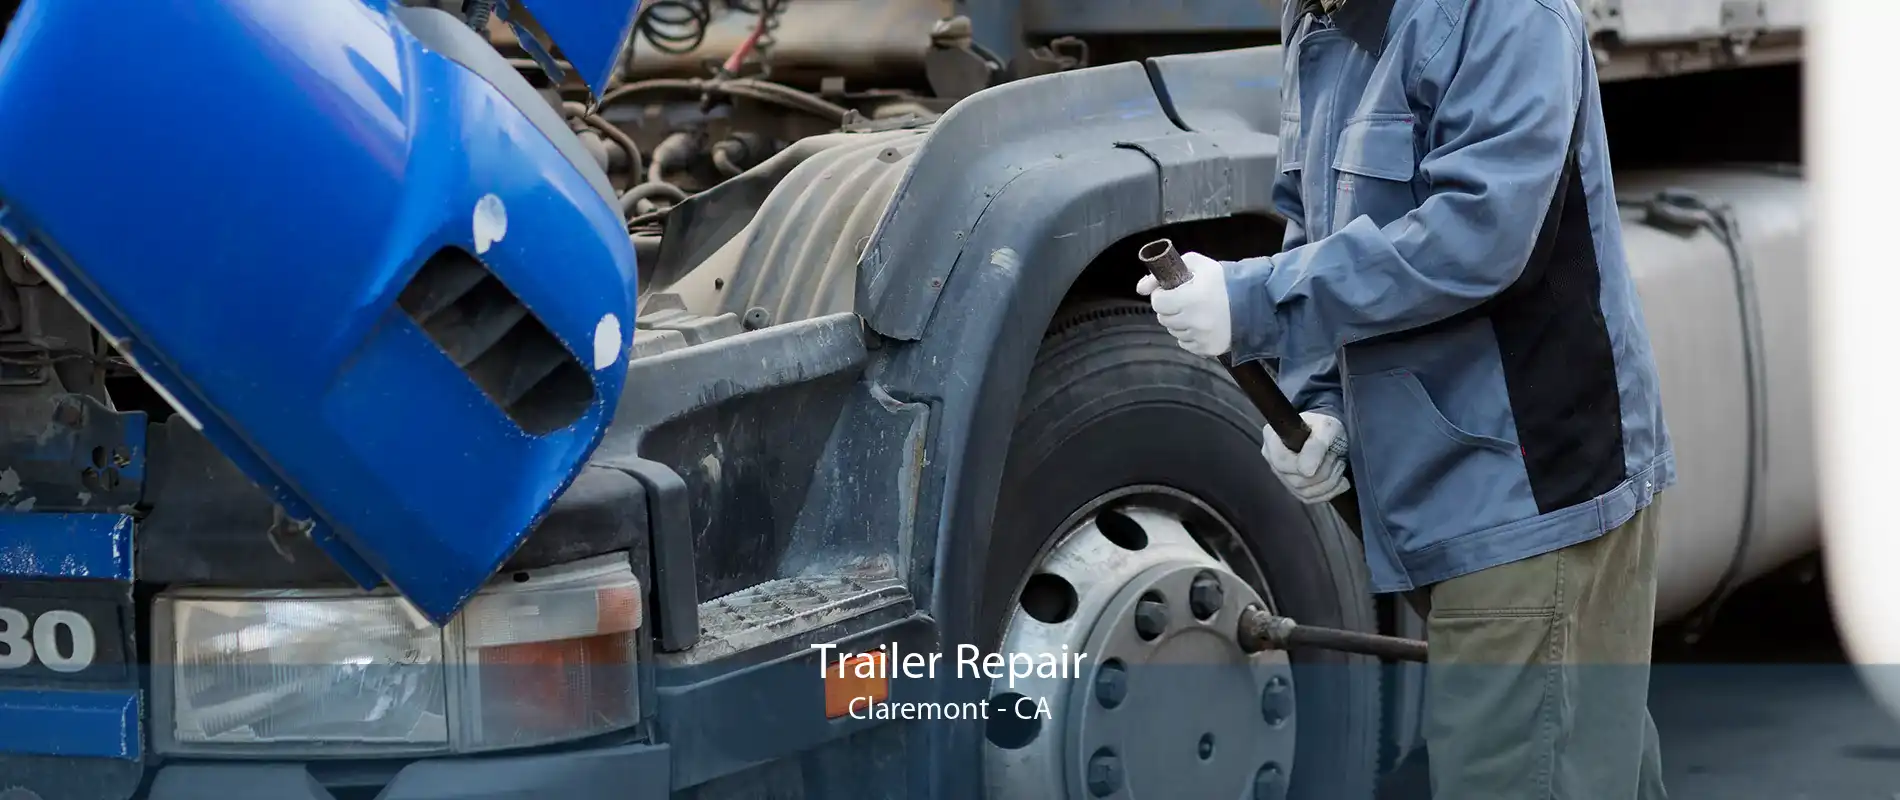 Trailer Repair Claremont - CA